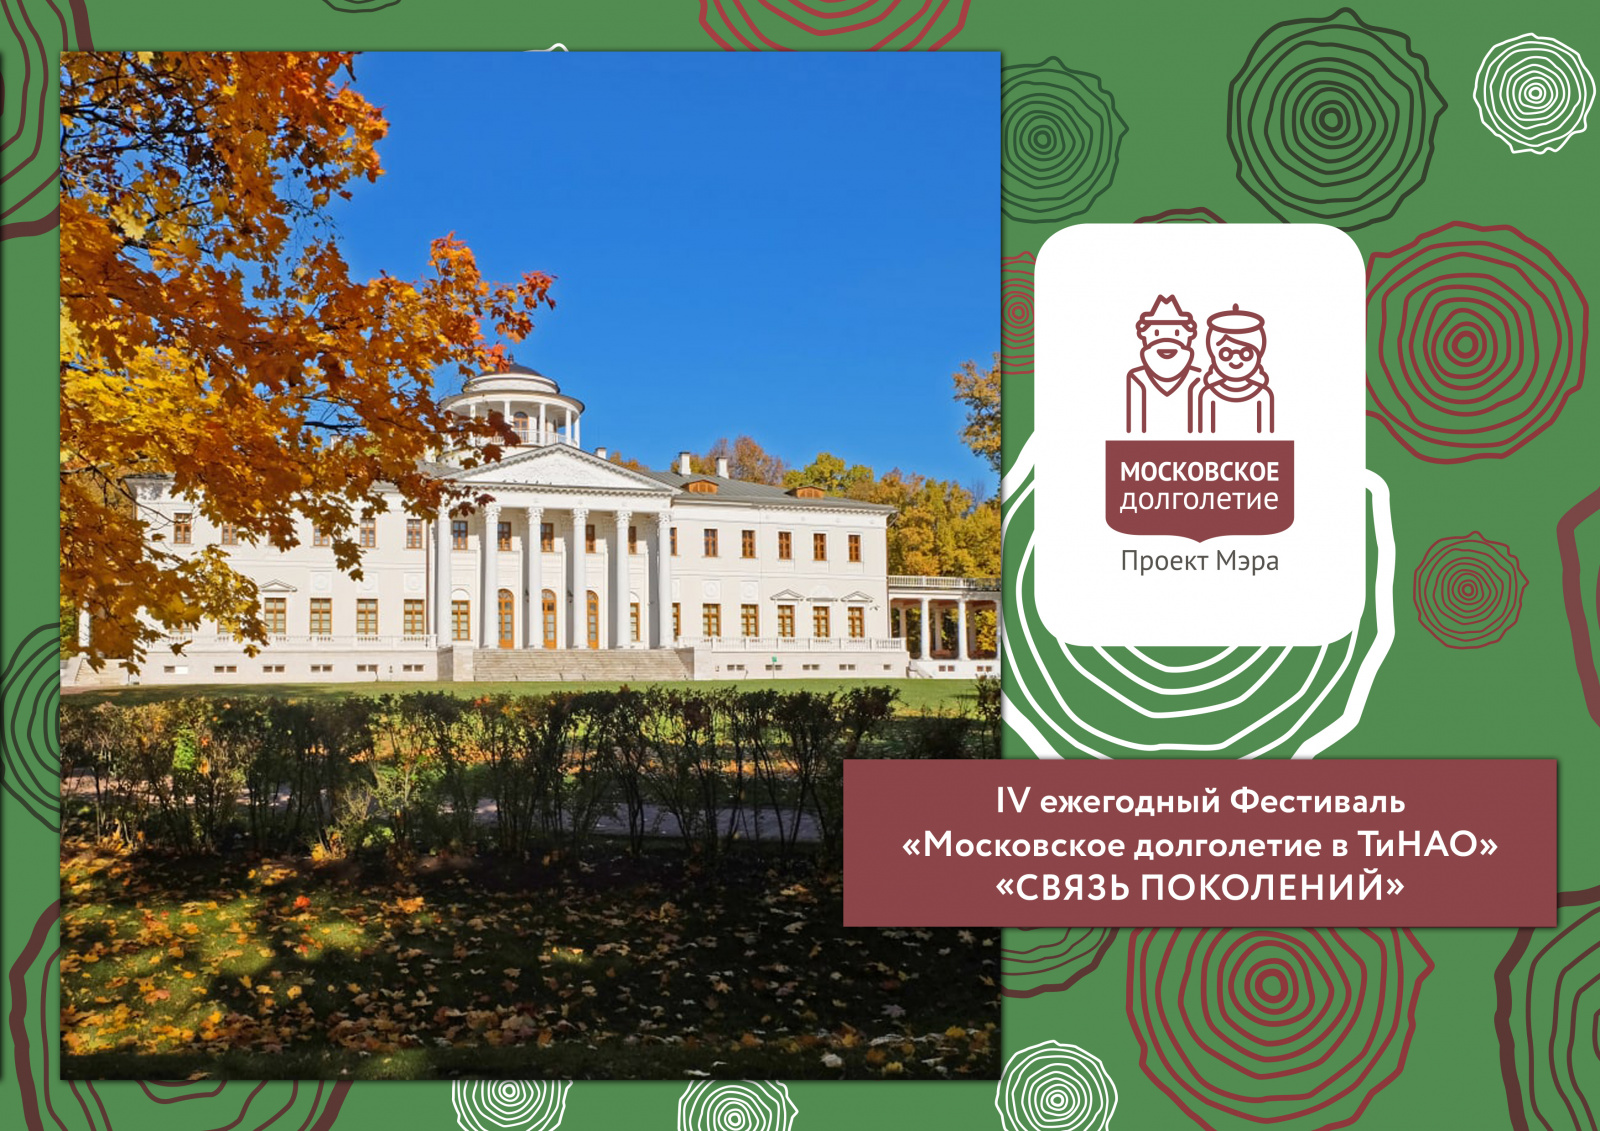 IV Ежегодный Фестиваль «Московское долголетие в ТиНАО» пройдет в музее-усадьбе «Остафьево»